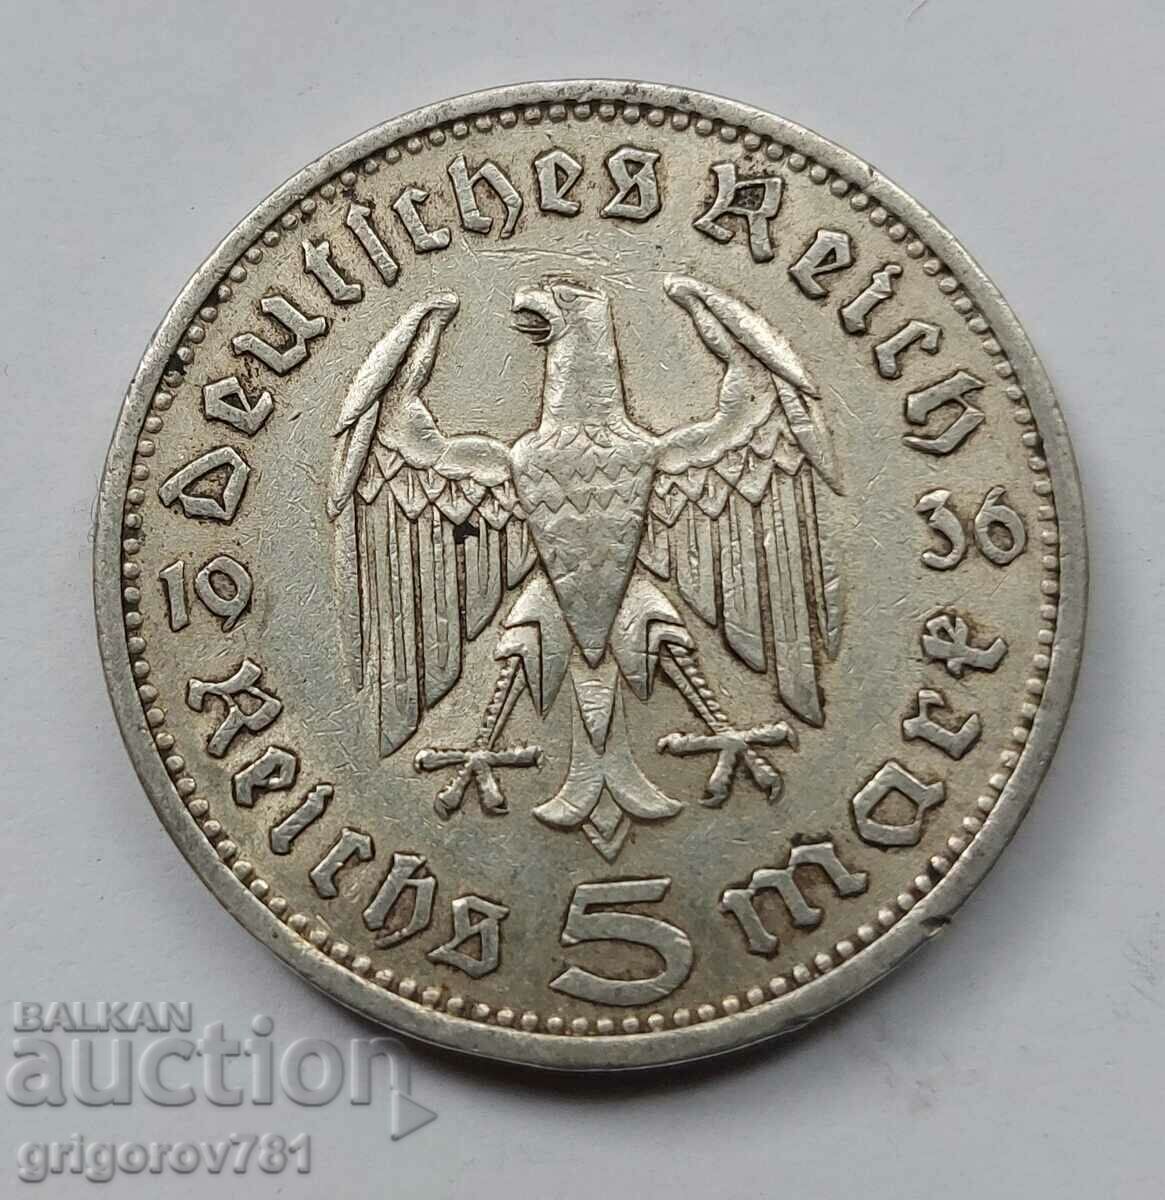 5 Mark Silver Γερμανία 1936 A III Reich Silver Coin #50